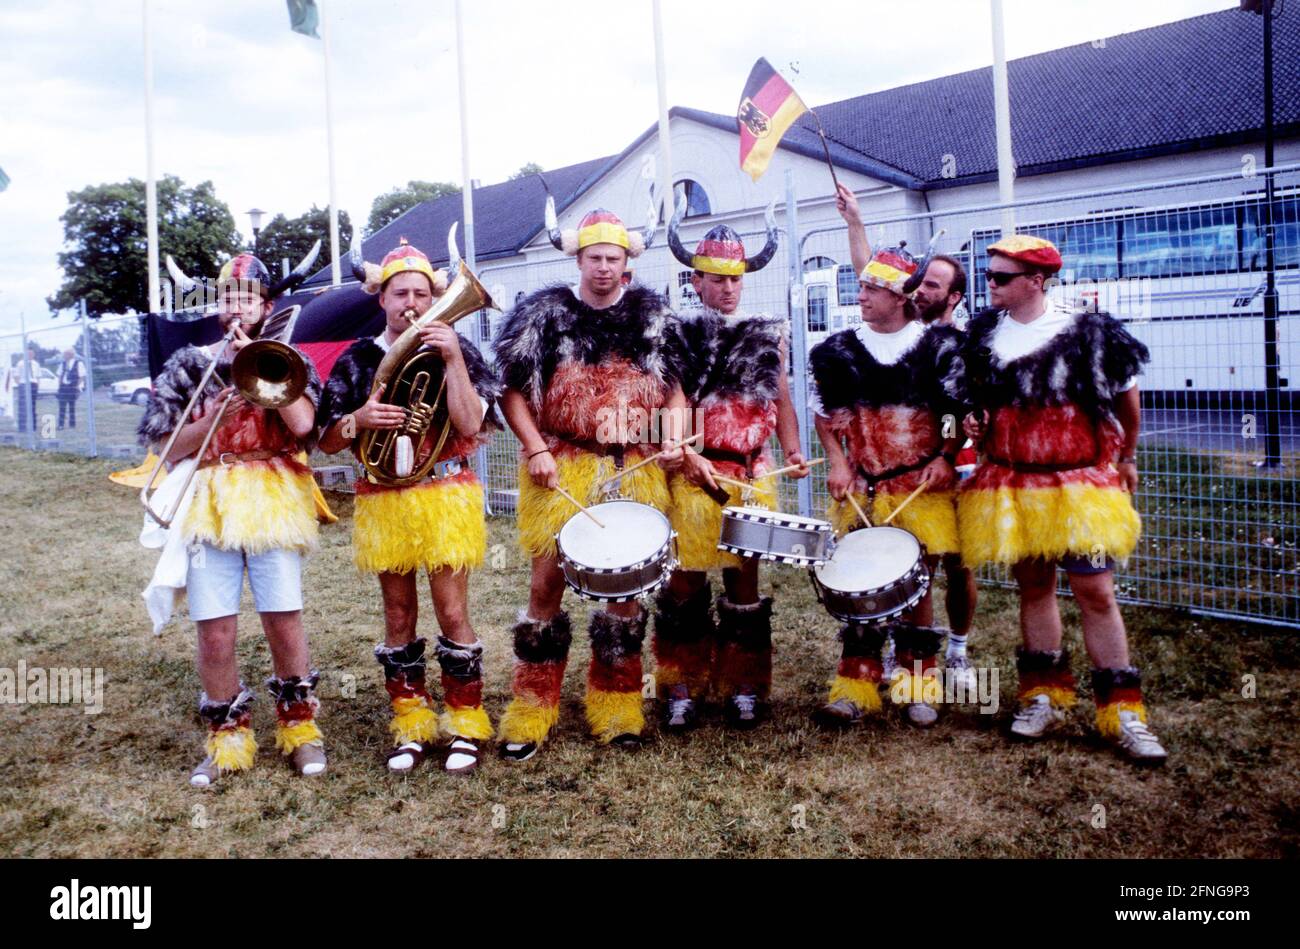 Championnat européen de football 1992 en Suède : groupe musical allemand devant l'hôtel Stalet à Atvidaberg. 09.06.1992. [traduction automatique] Banque D'Images